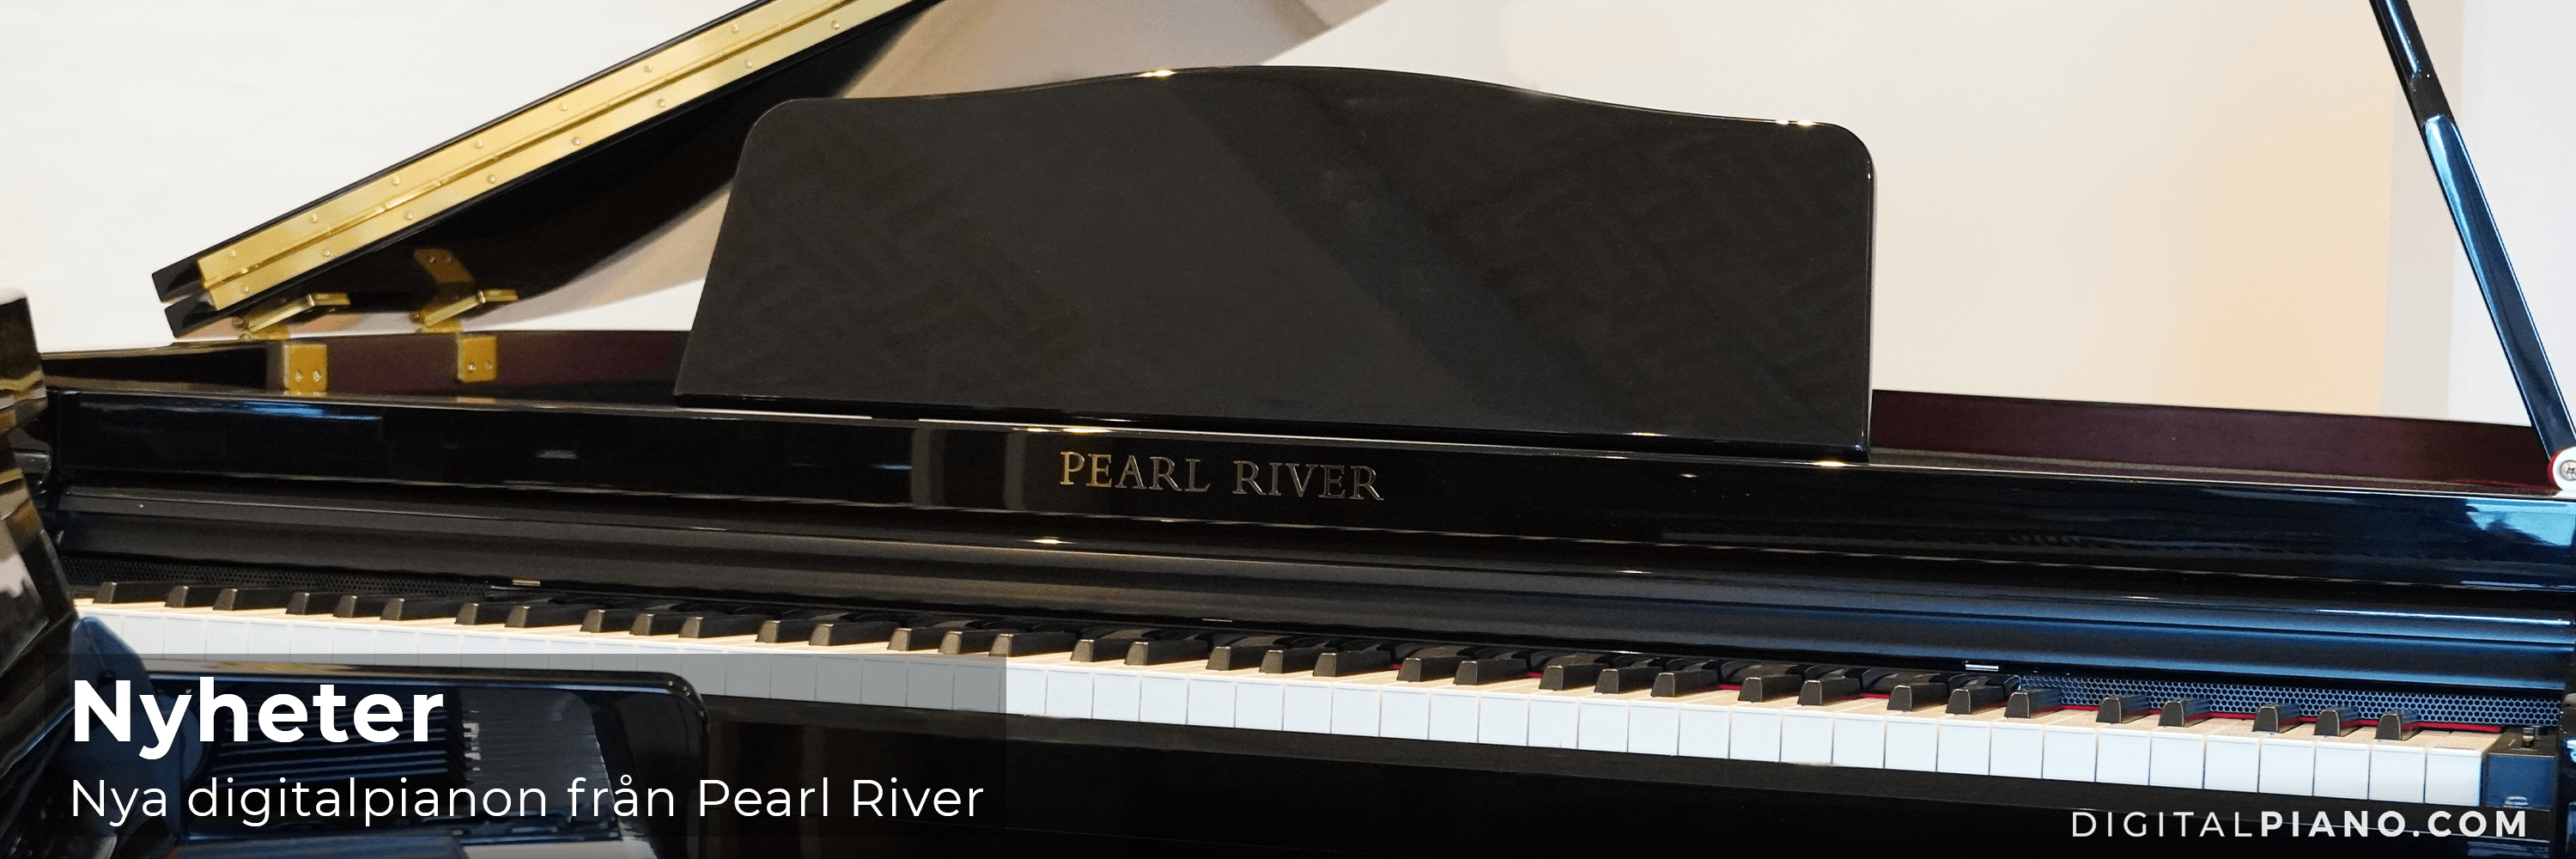 Pearl River Digitalpianon